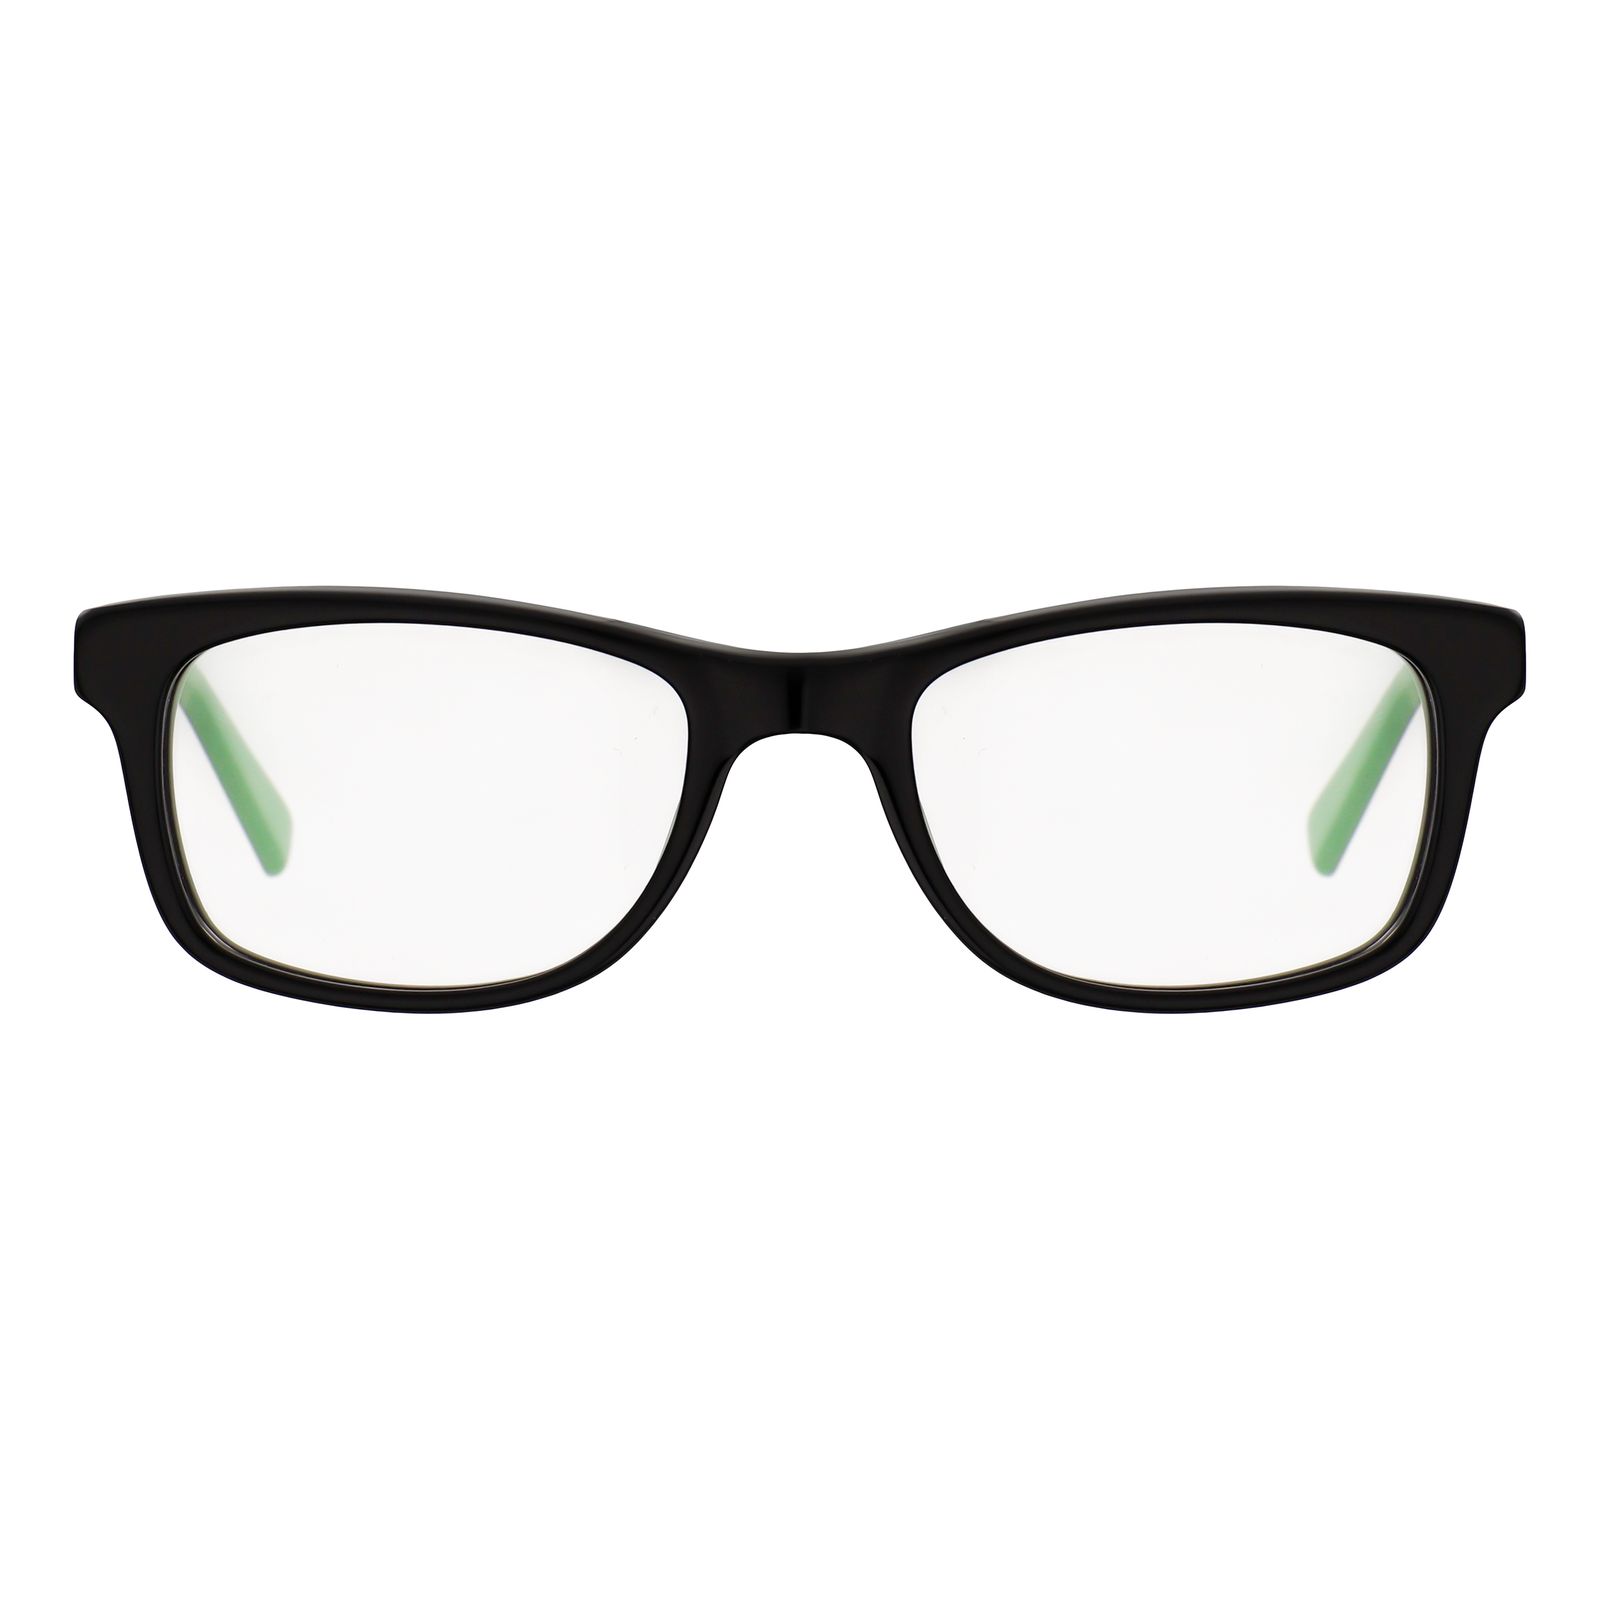 فریم عینک طبی نایکی مدل 5509-25 -  - 1